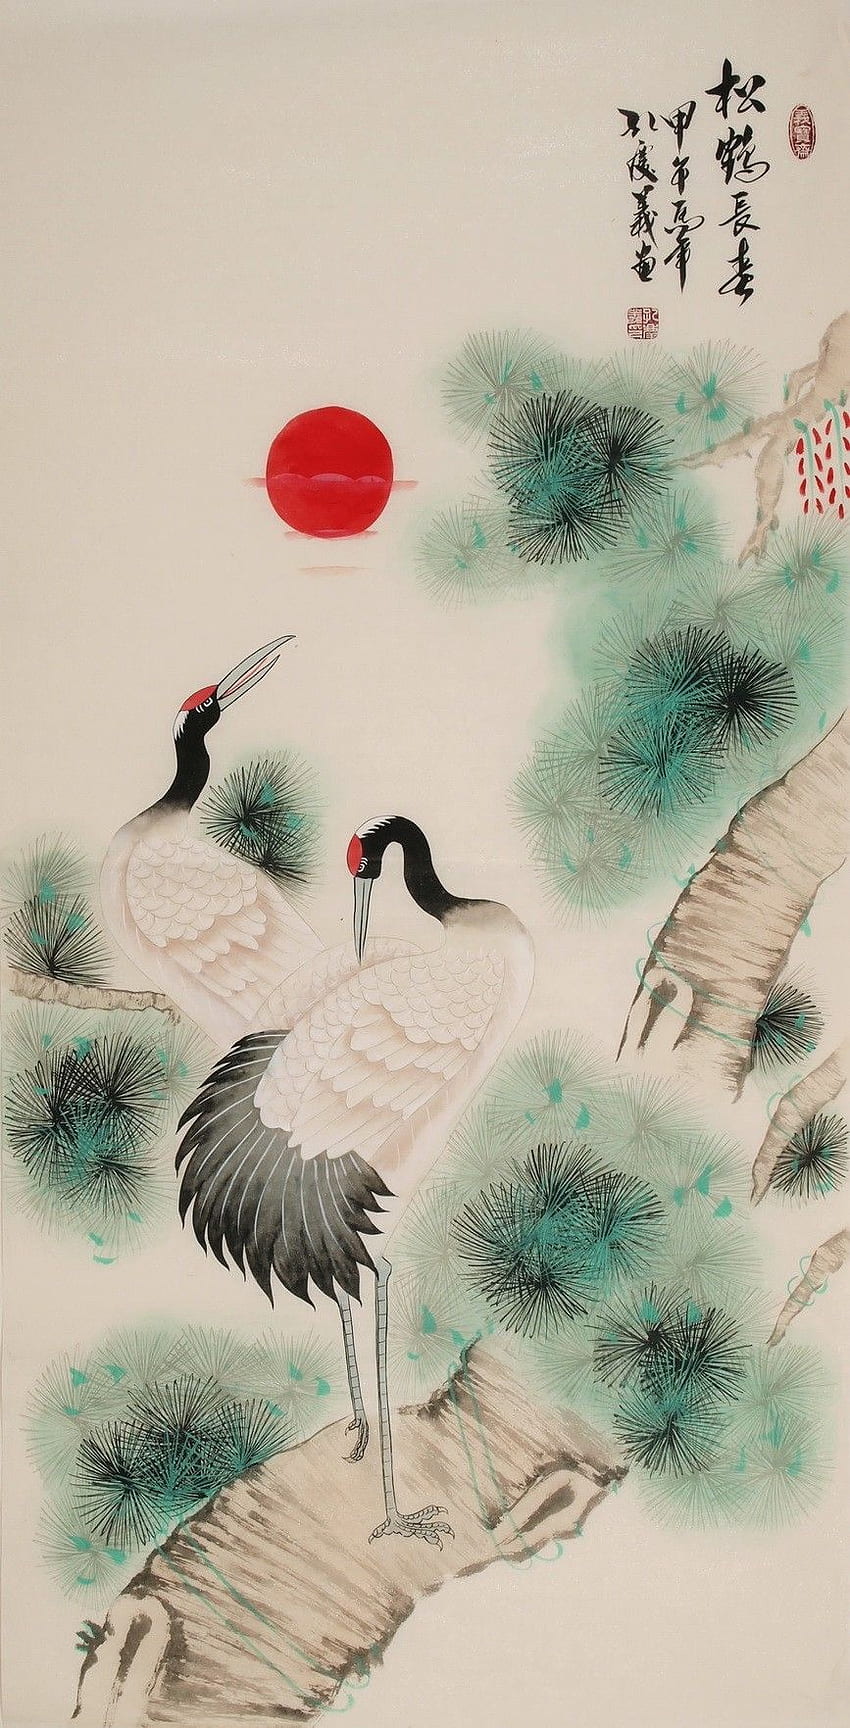 Kran - CNAG000526. Gemälde, chinesische Malerei und chinesischer Pinsel, japanische Kranichmalerei von Vögeln HD-Handy-Hintergrundbild